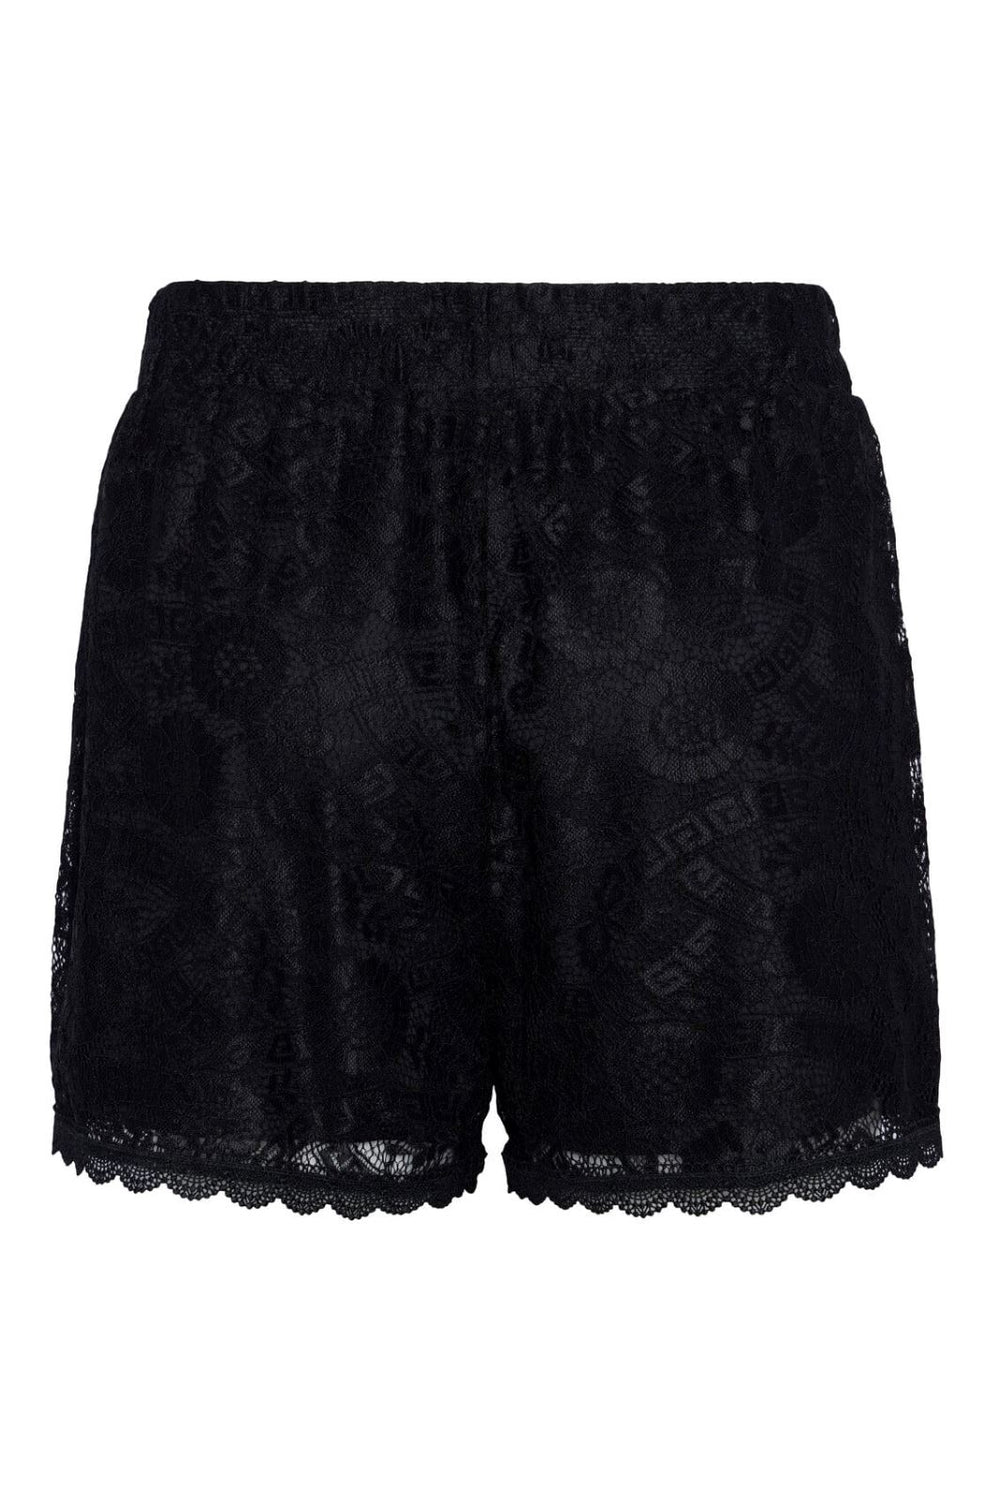 Pieces - Pcolline Shorts - 4463442 Black Shorts 